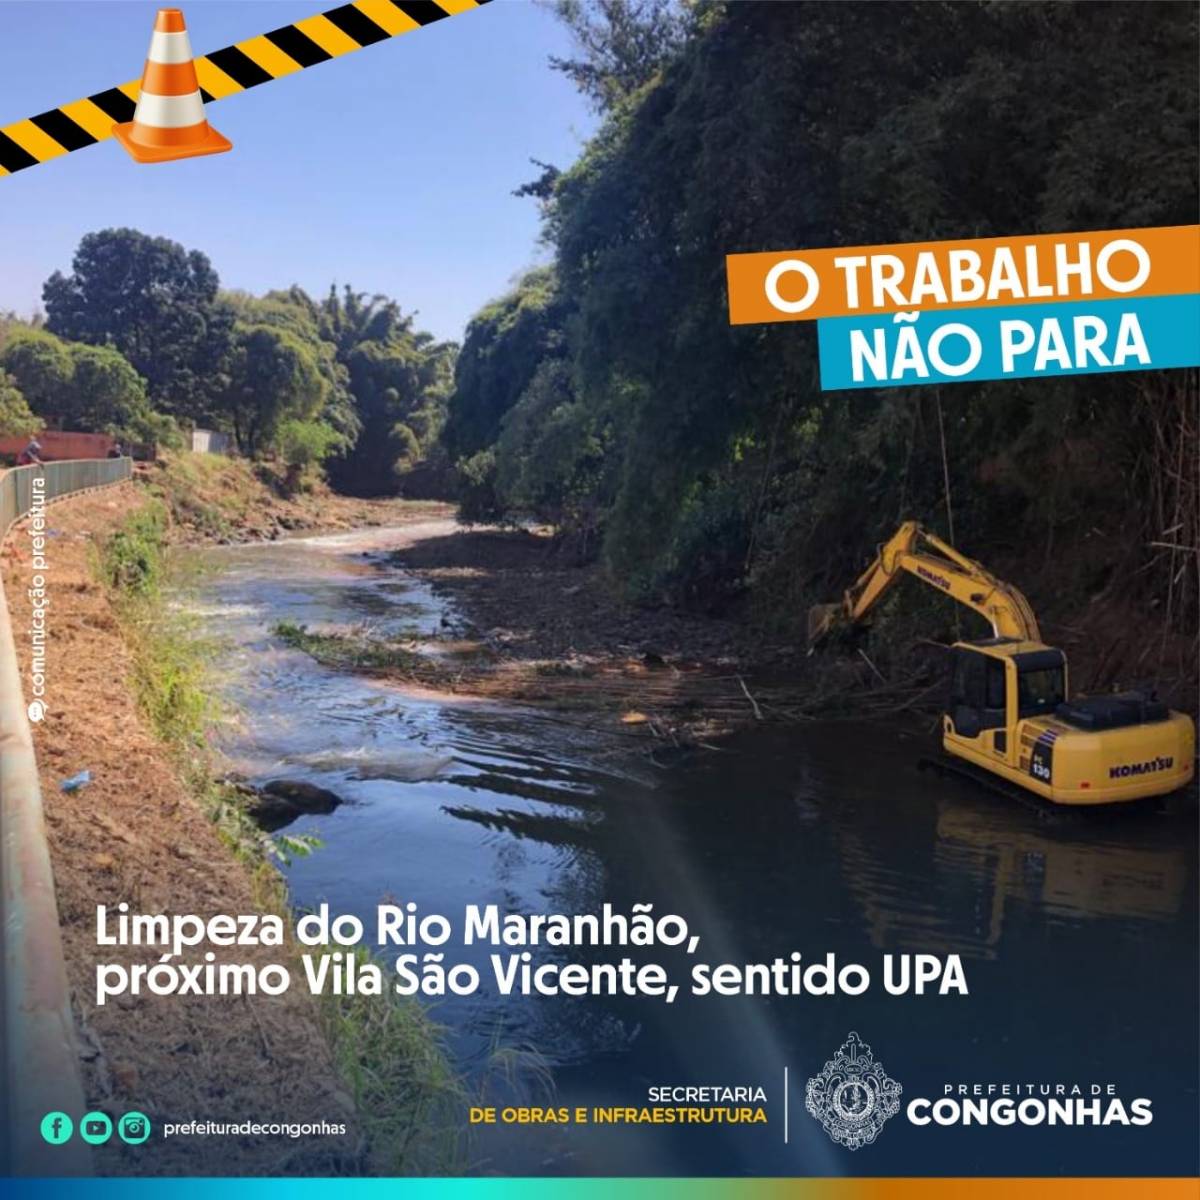 Prefeitura de Congonhas realiza limpeza do Rio Maranhão